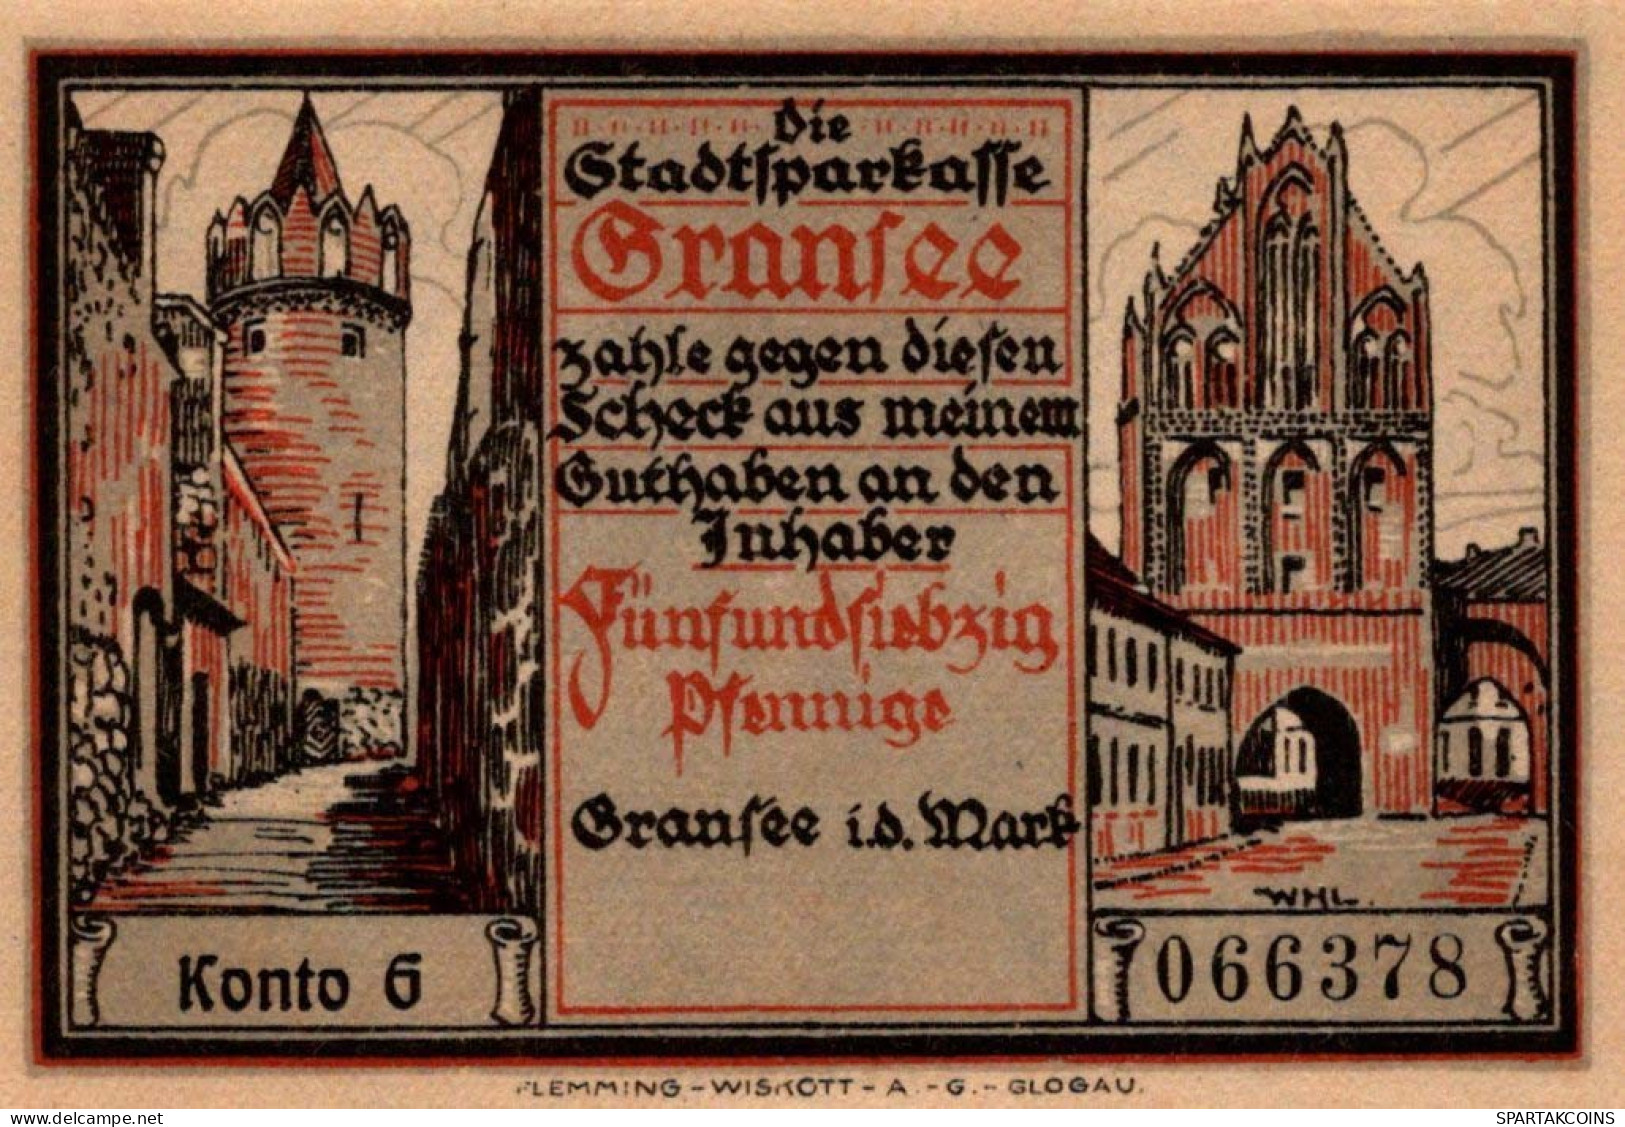 75 PFENNIG 1921 Stadt GRANSEE Brandenburg UNC DEUTSCHLAND Notgeld #PD029 - [11] Emissions Locales